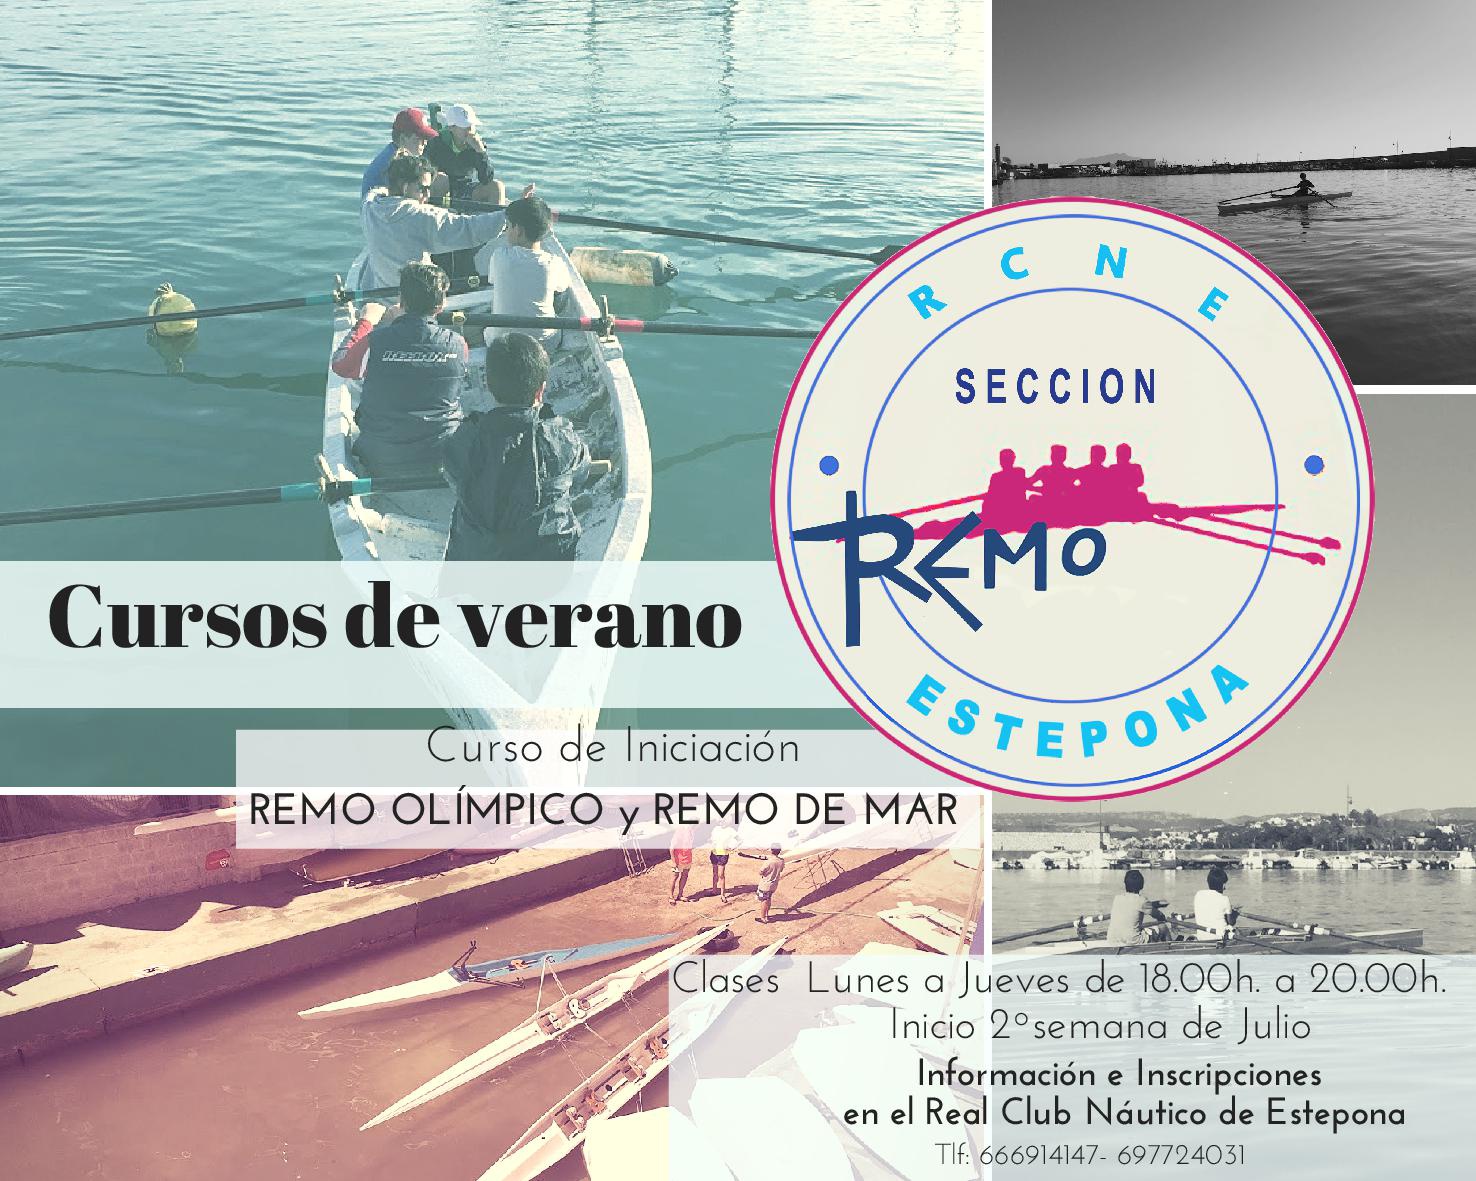 Cursos de verano de la Escuela de Remo en el Real Club Náutico de Estepona